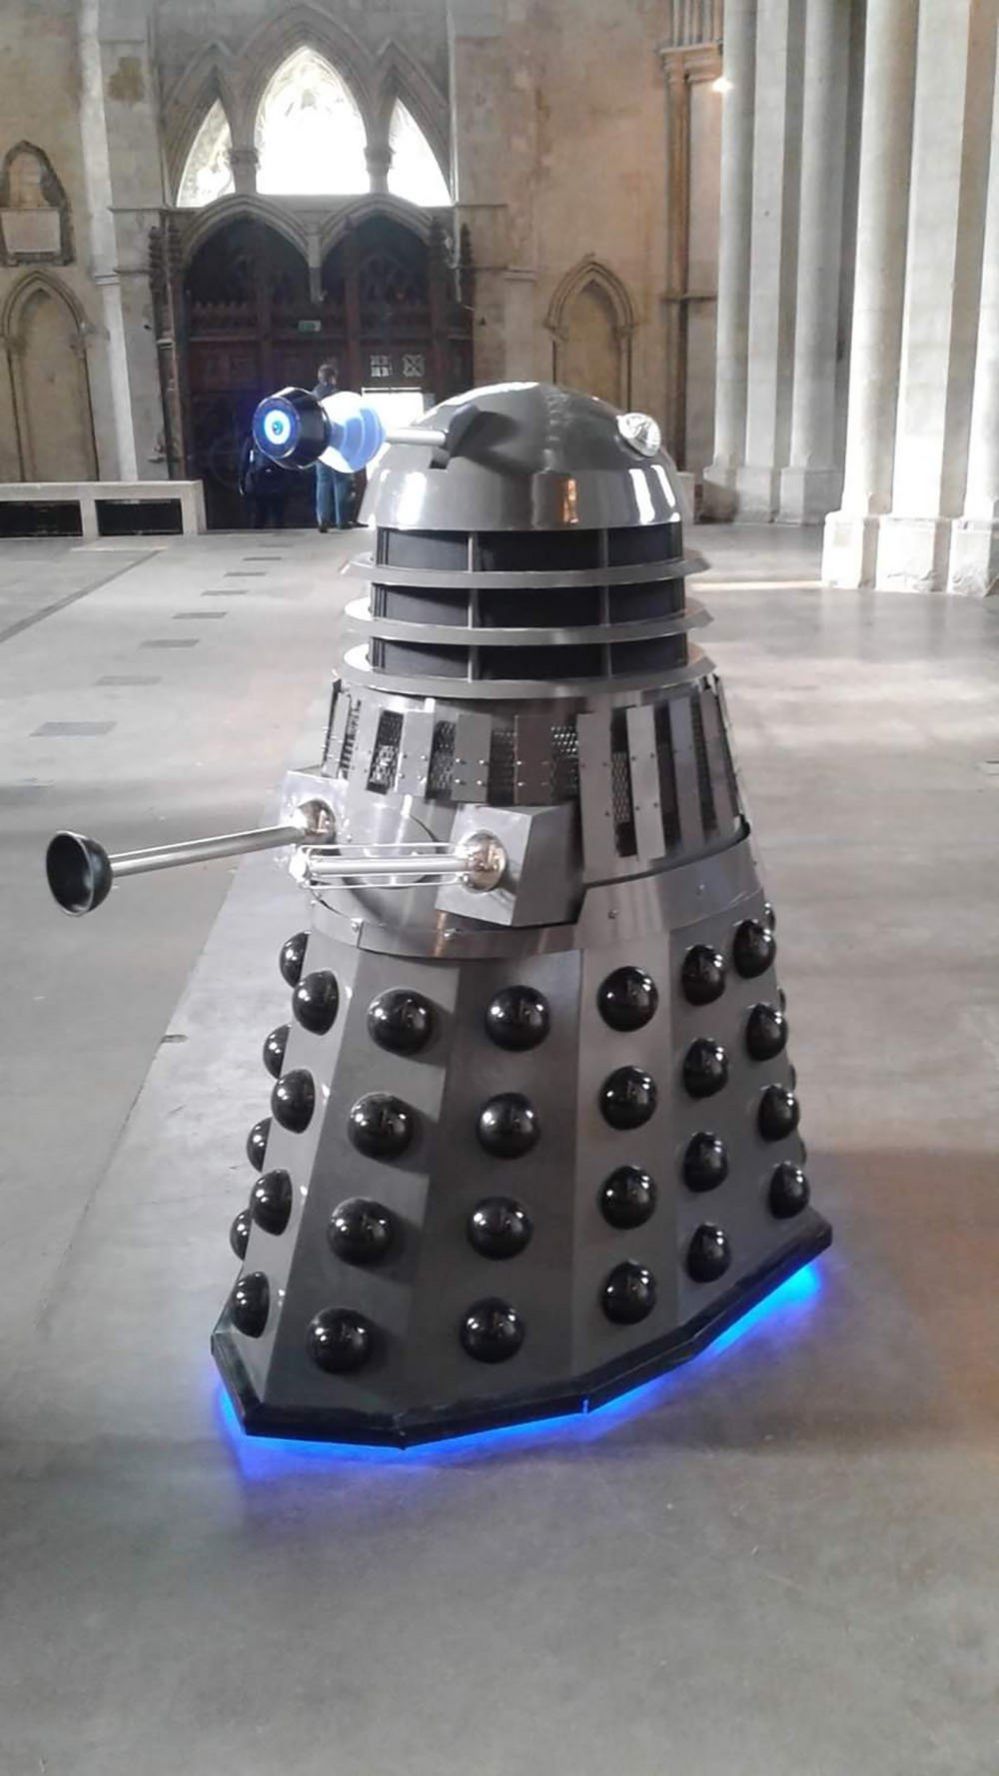 Dalek in an abbey